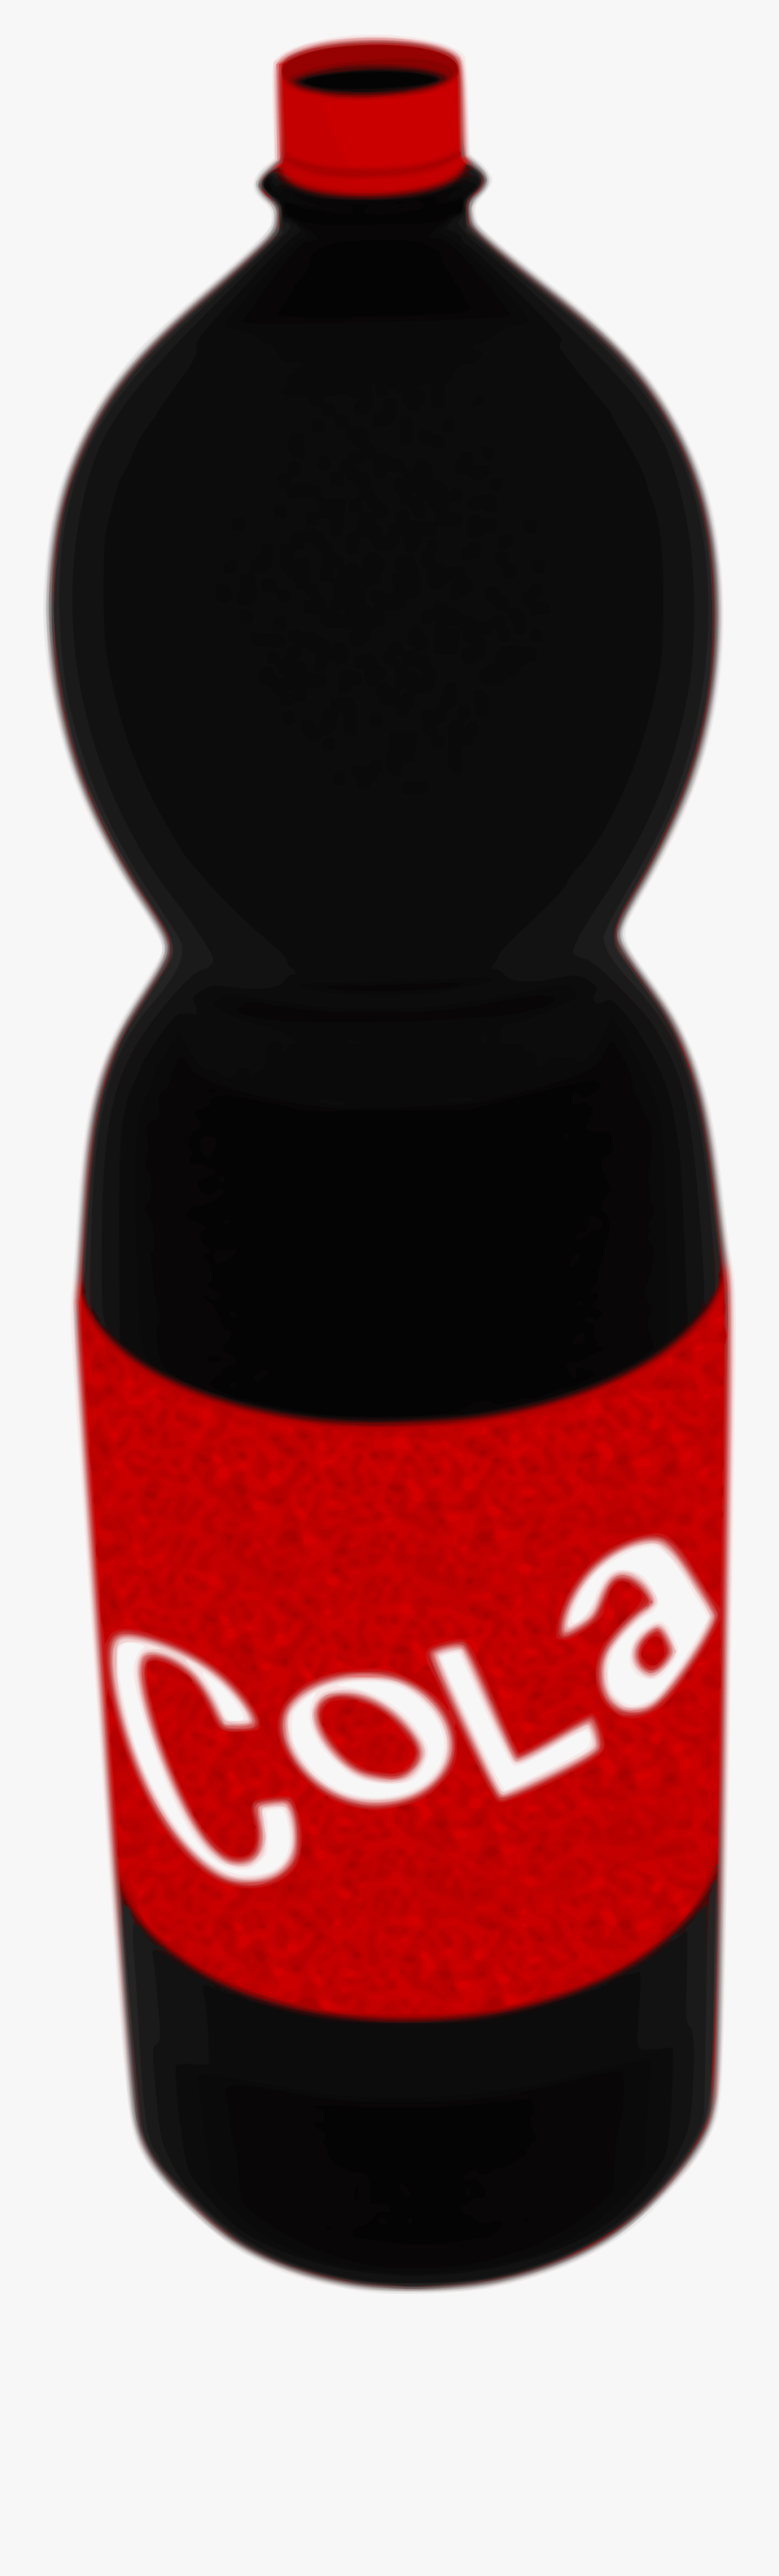 Clip Art Cola Bottle, Transparent Clipart